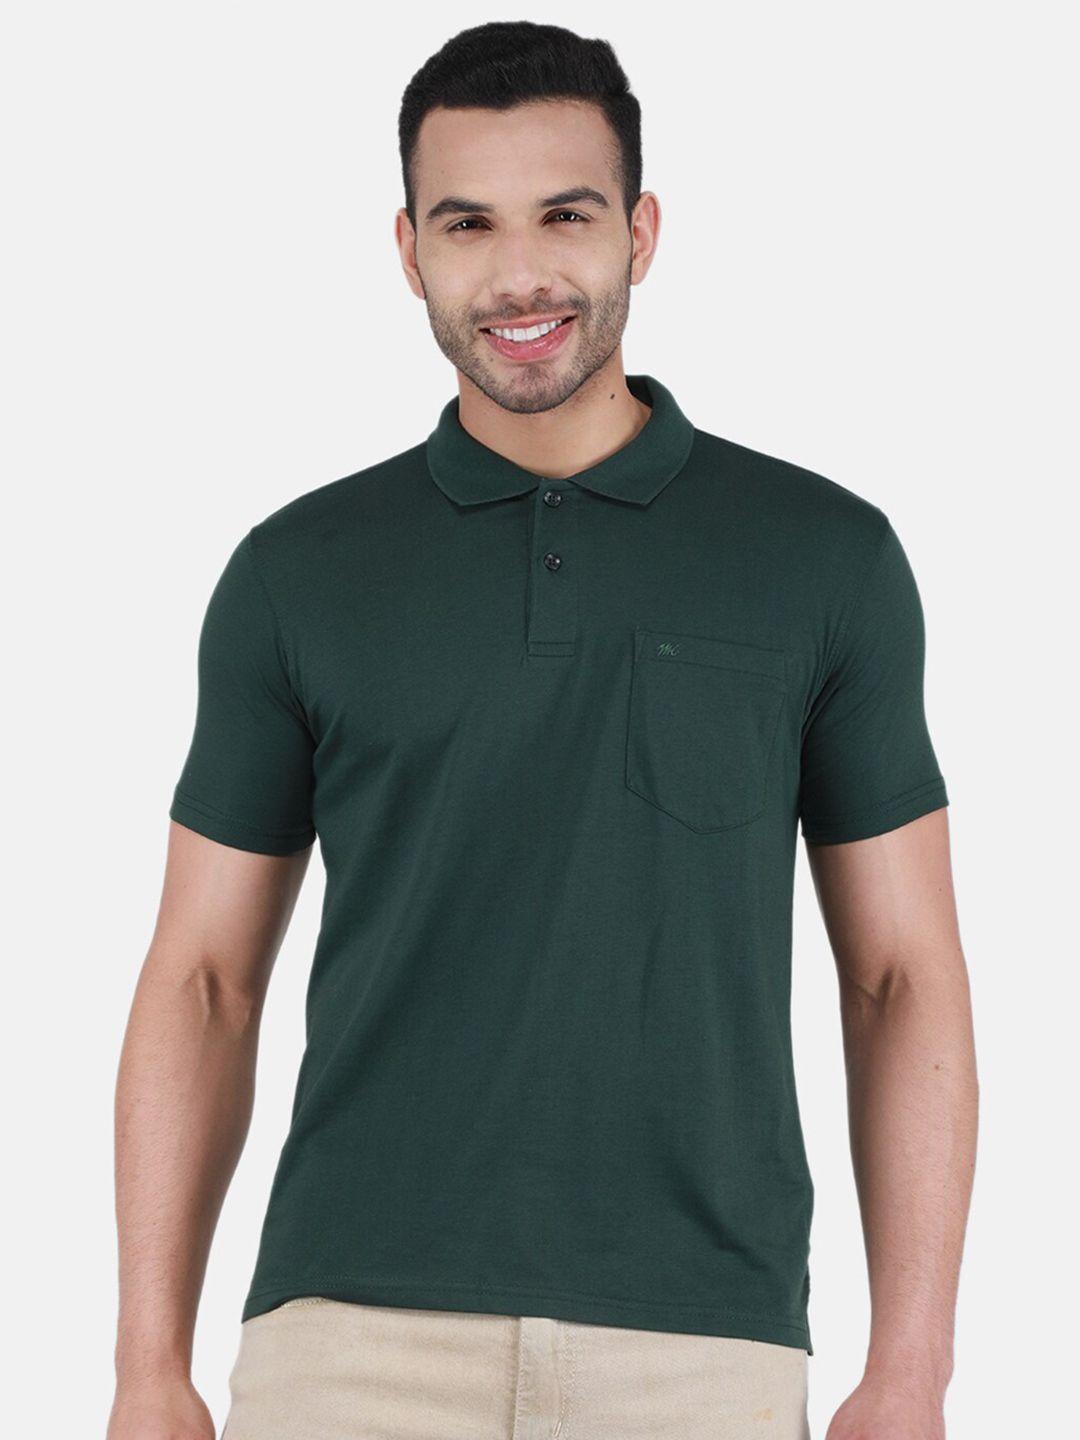 monte-carlo-polo-collar-t-shirt